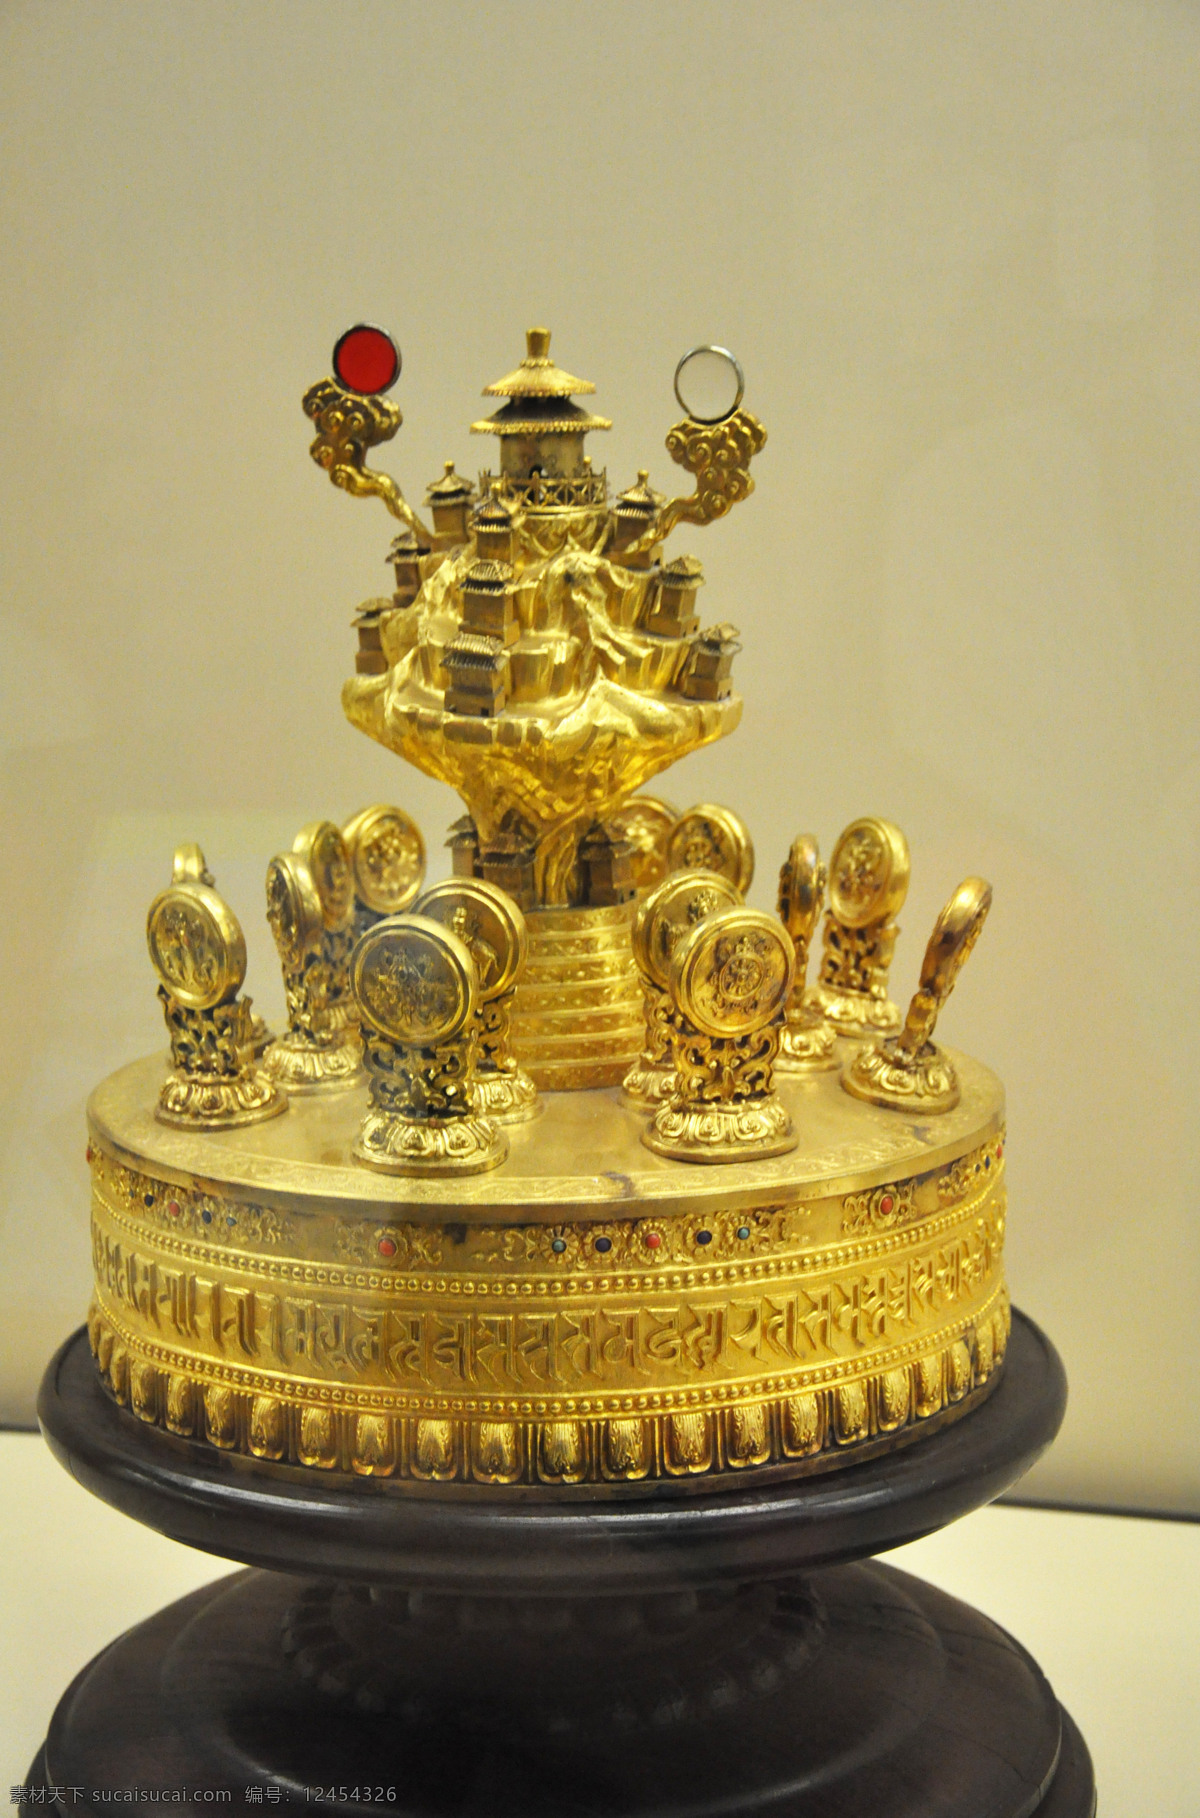 布达拉宫 财宝 国内旅游 金银 聚宝盆 旅游摄影 上海 上海世博会 世博会 展览 展会 鎏金 西藏 藏品 宝物 文物 装饰素材 展示设计